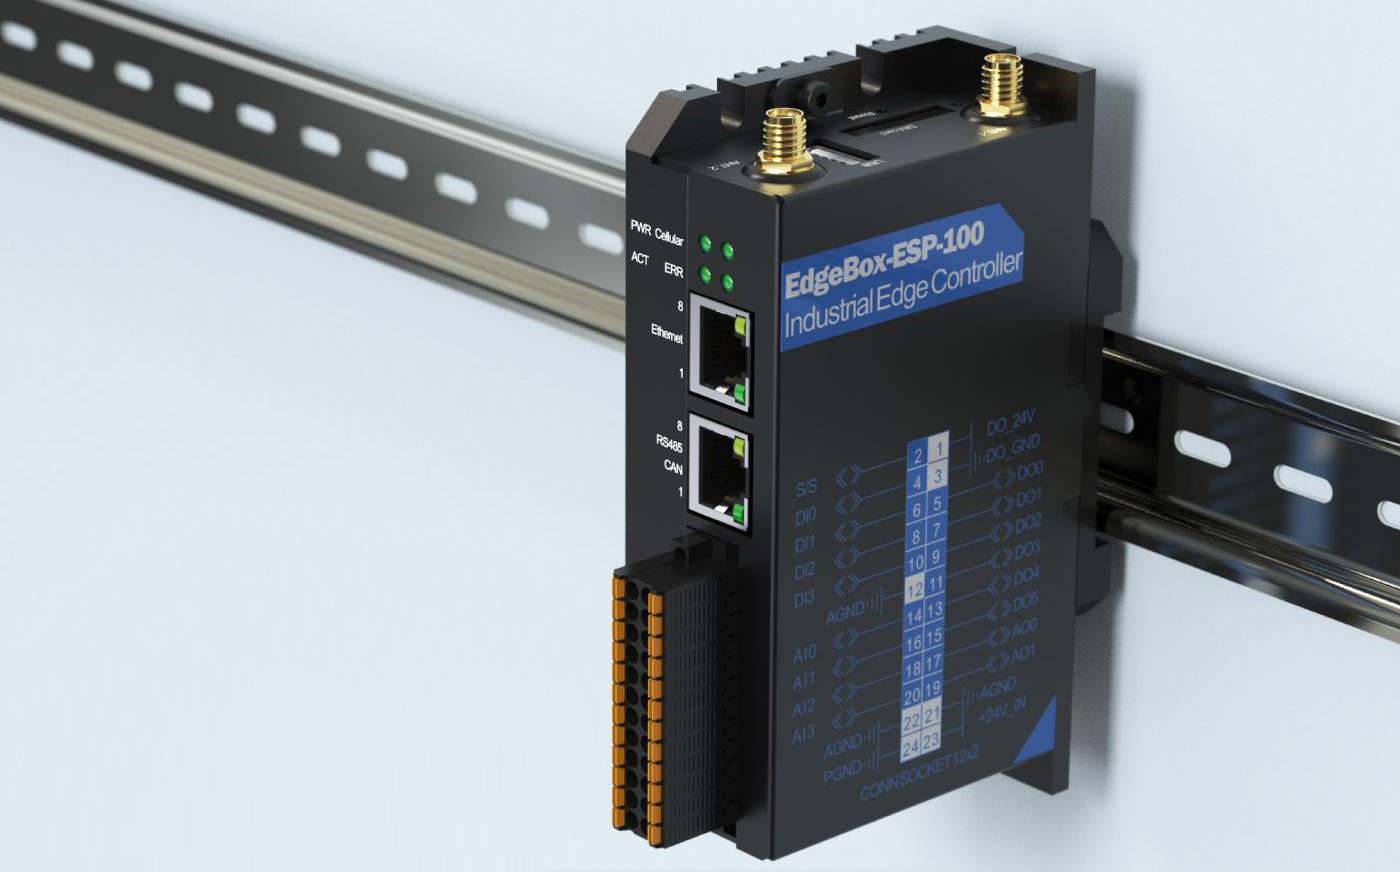 EdgeBox-ESP-100 Industriële Edge Controller, WiFi, BLE, 4G LTE, DIO, AIO, Ethernet, CAN, RS485